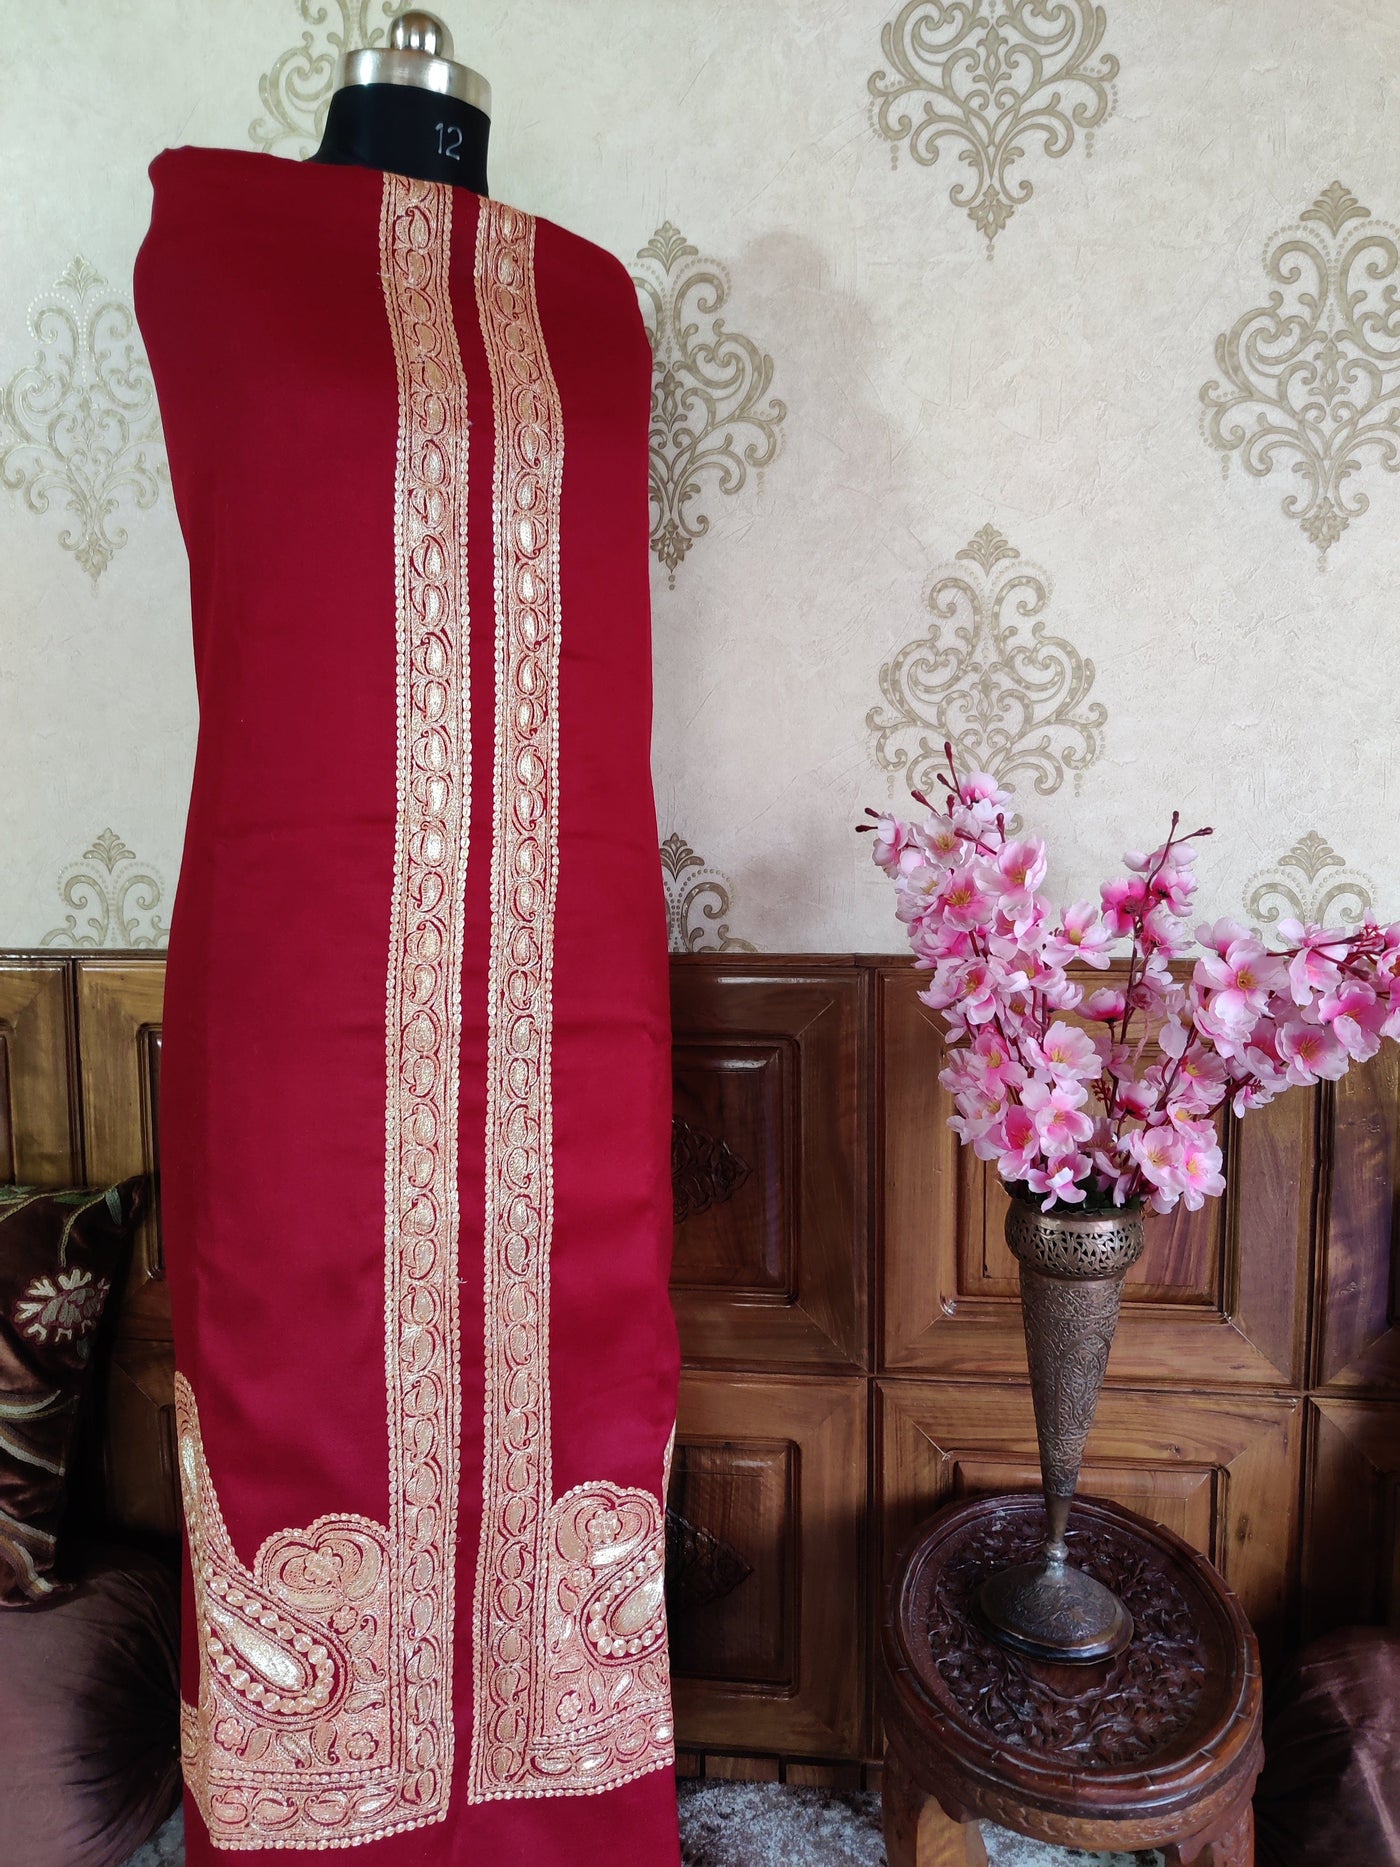 Maroon Kashmiri Suit Woollen With Golden Tilla Embroidery  (3 pcs) Woolen Suit KashmKari Blue Kashmiri Woollen Suit With Tilla Embroidery jaal design (3 pcs).  Kashmiri Suit online